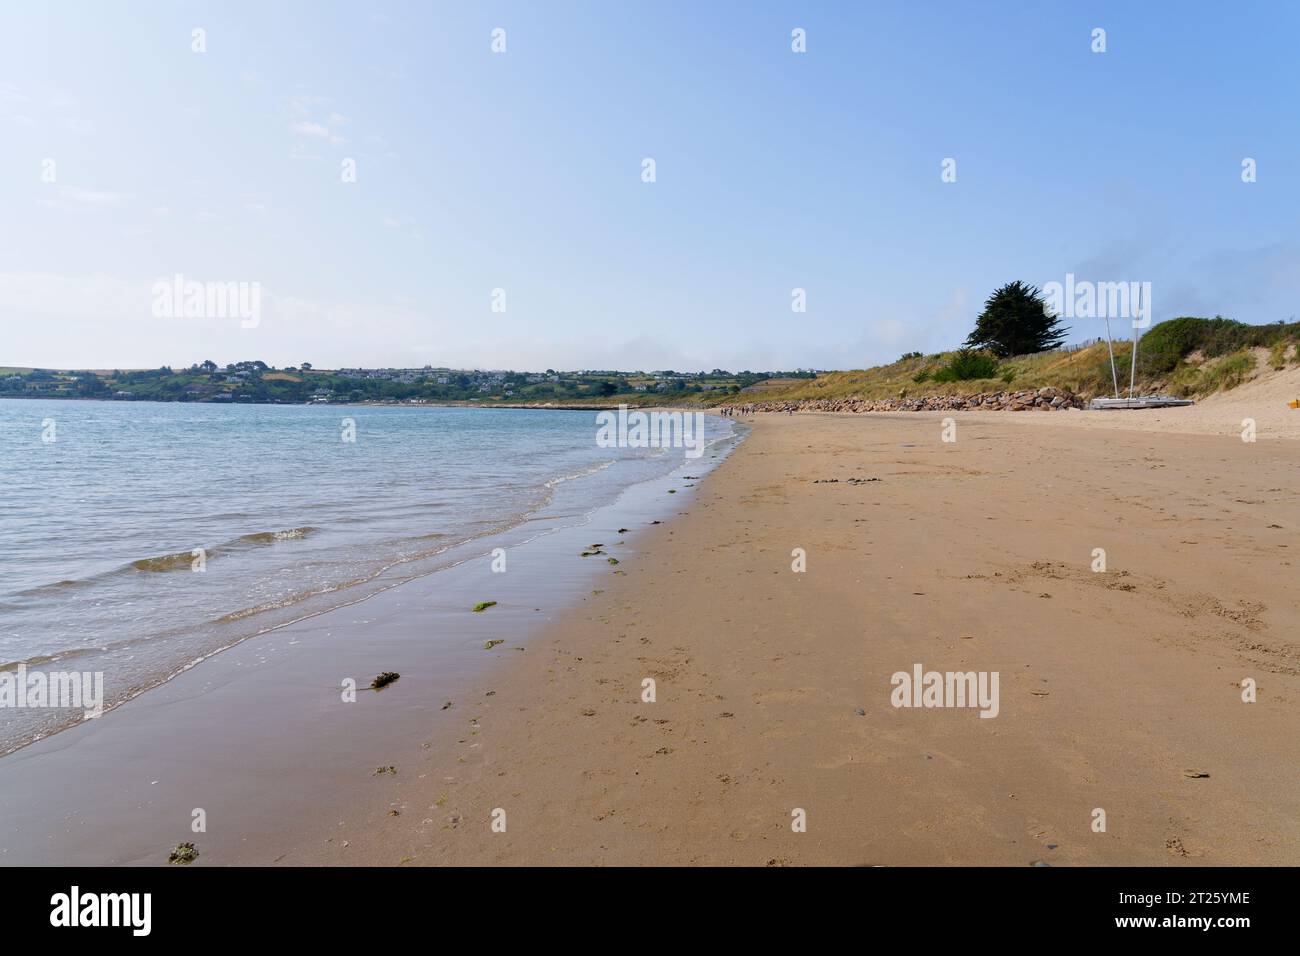 La spiaggia di Abersoch è quasi deserta, ad eccezione di un piccolo numero di persone indistinte in lontananza. Foto Stock